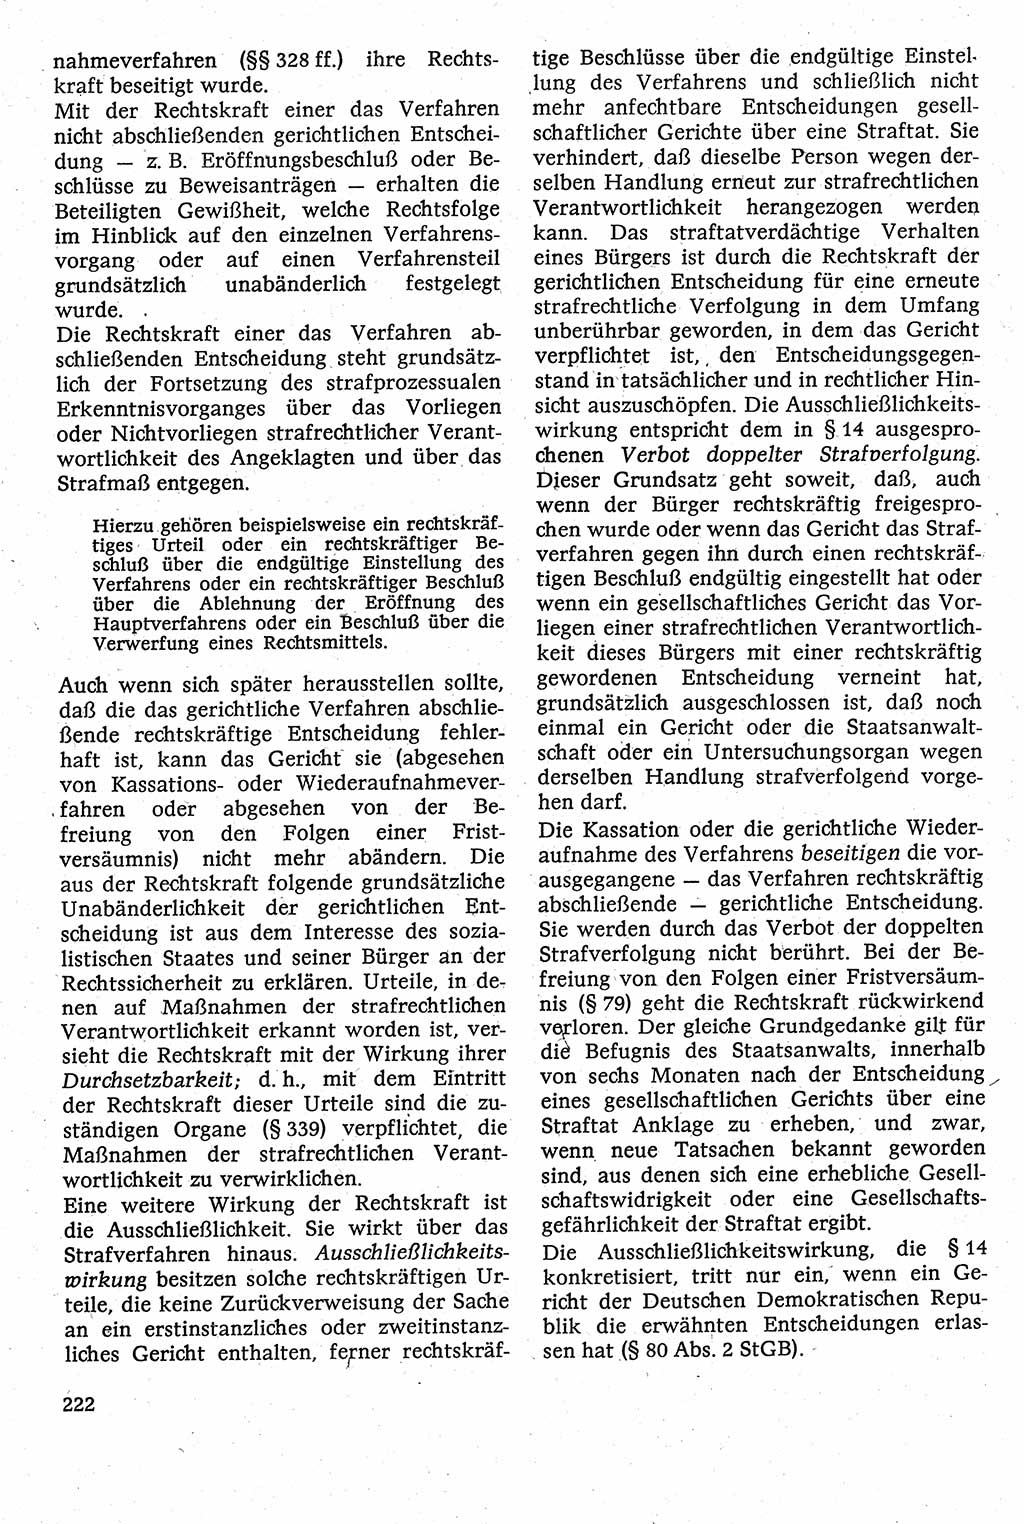 Strafverfahrensrecht [Deutsche Demokratische Republik (DDR)], Lehrbuch 1982, Seite 222 (Strafverf.-R. DDR Lb. 1982, S. 222)